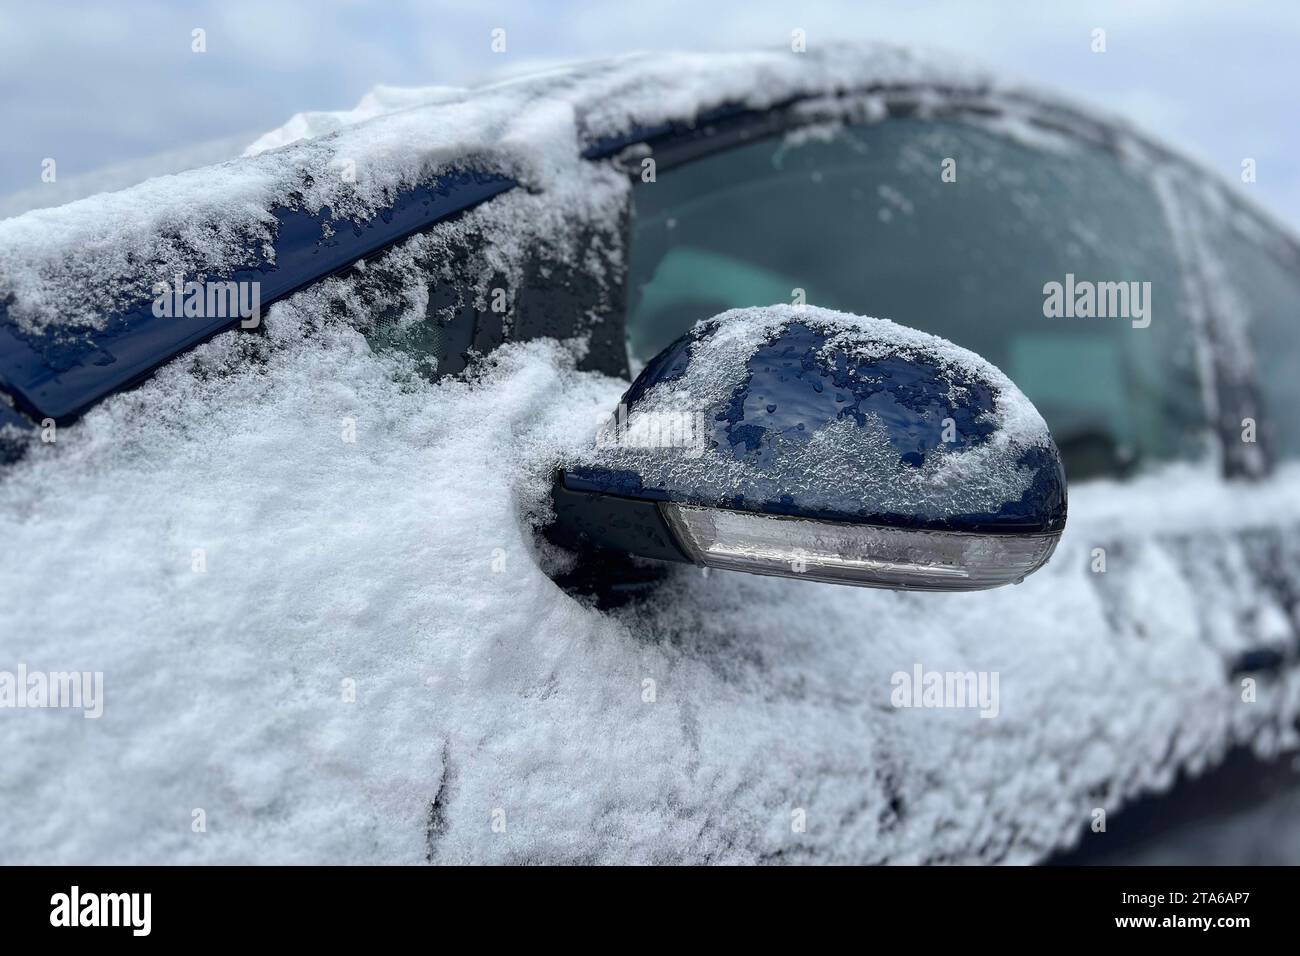 https://c8.alamy.com/comp/2TA6AP7/wintereinbruch-in-muenchen-winter-2023-schnee-und-eis-auf-einem-auto-seitenspiegel-pkw-winter-onset-in-munich-winter-2023-snow-and-ice-on-a-car-side-mirror-car-credit-imagoalamy-live-news-2TA6AP7.jpg